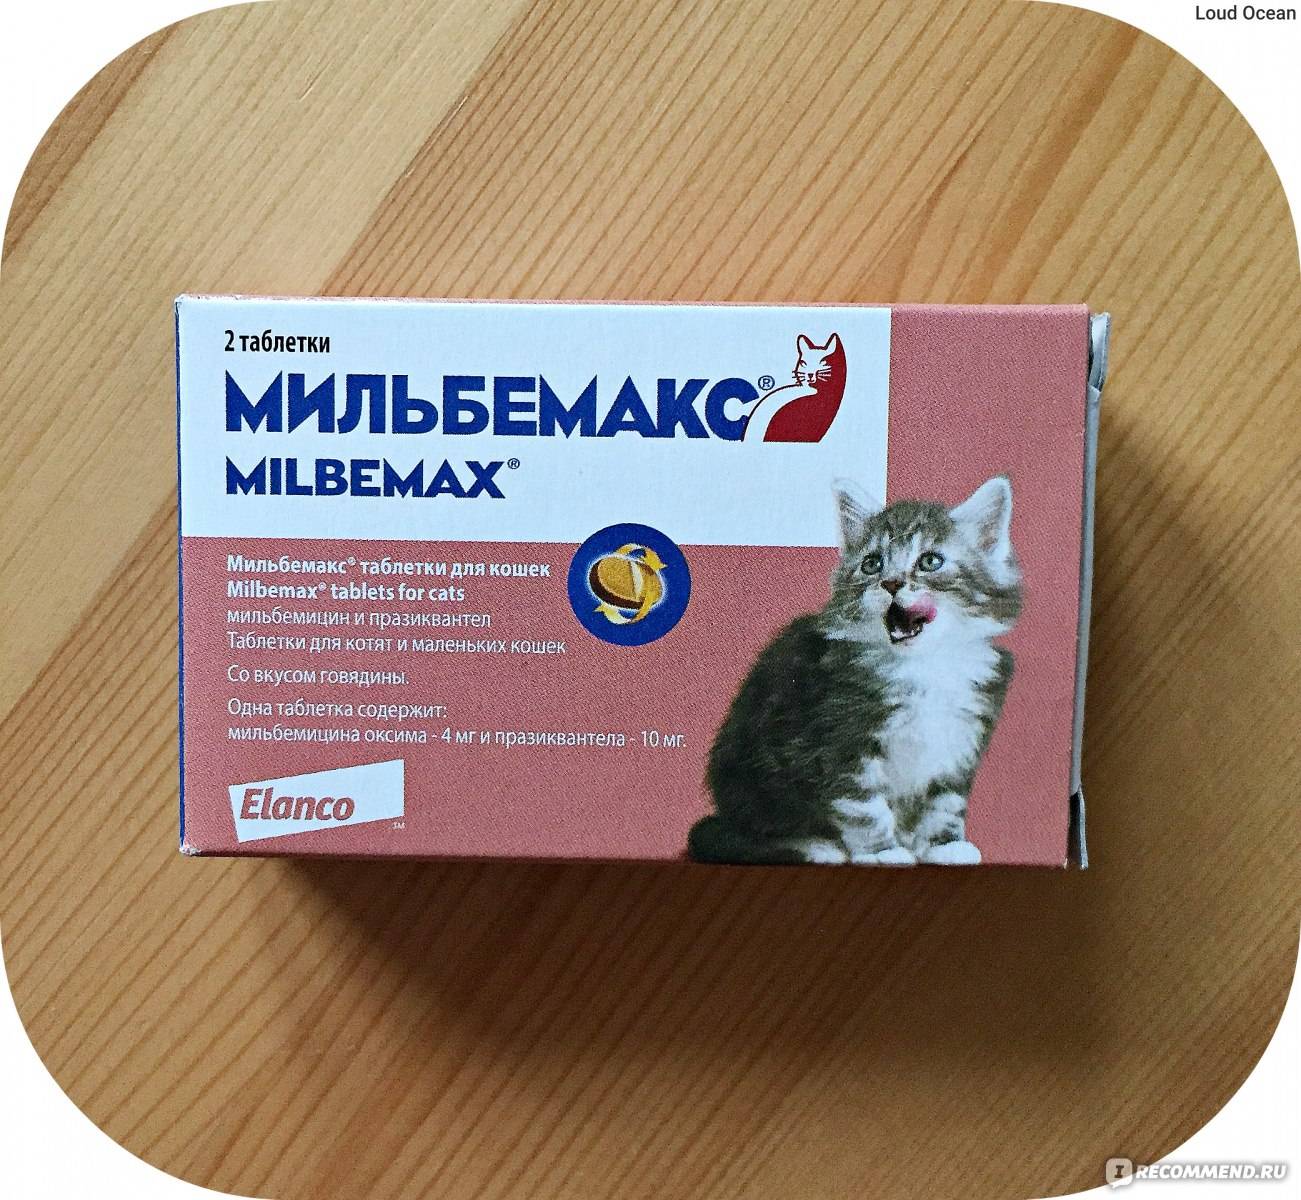 Инструкция по применению мильбемакса у кошек. рассчитайте оптимальную дозу препарата milbemax кошкам. изучите широту противопаразитарного эффекта мильбемакса для комплексного лечения множества патологий у кошек. улучшите эффективность терапии на 200%